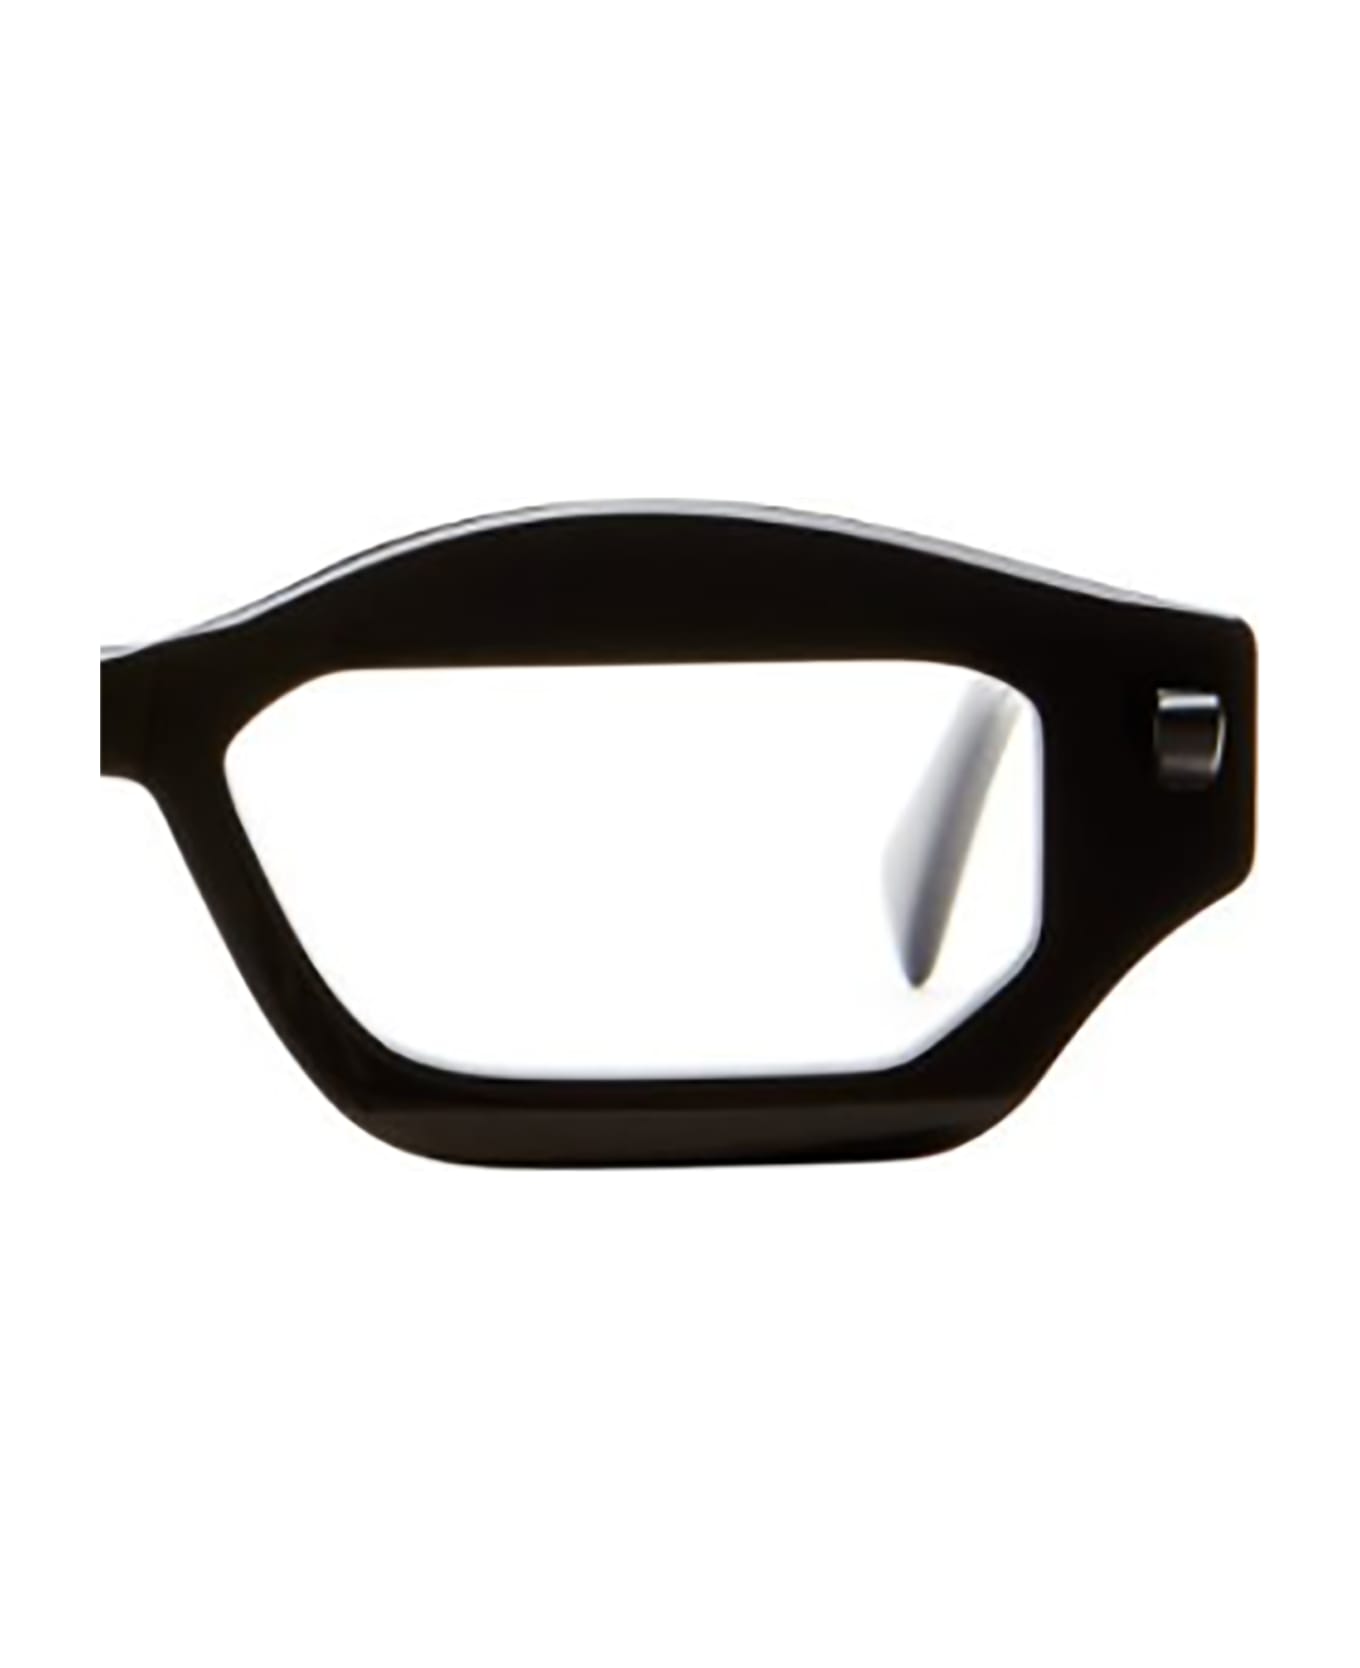 Kuboraum Q6 Sunglasses - Bs サングラス